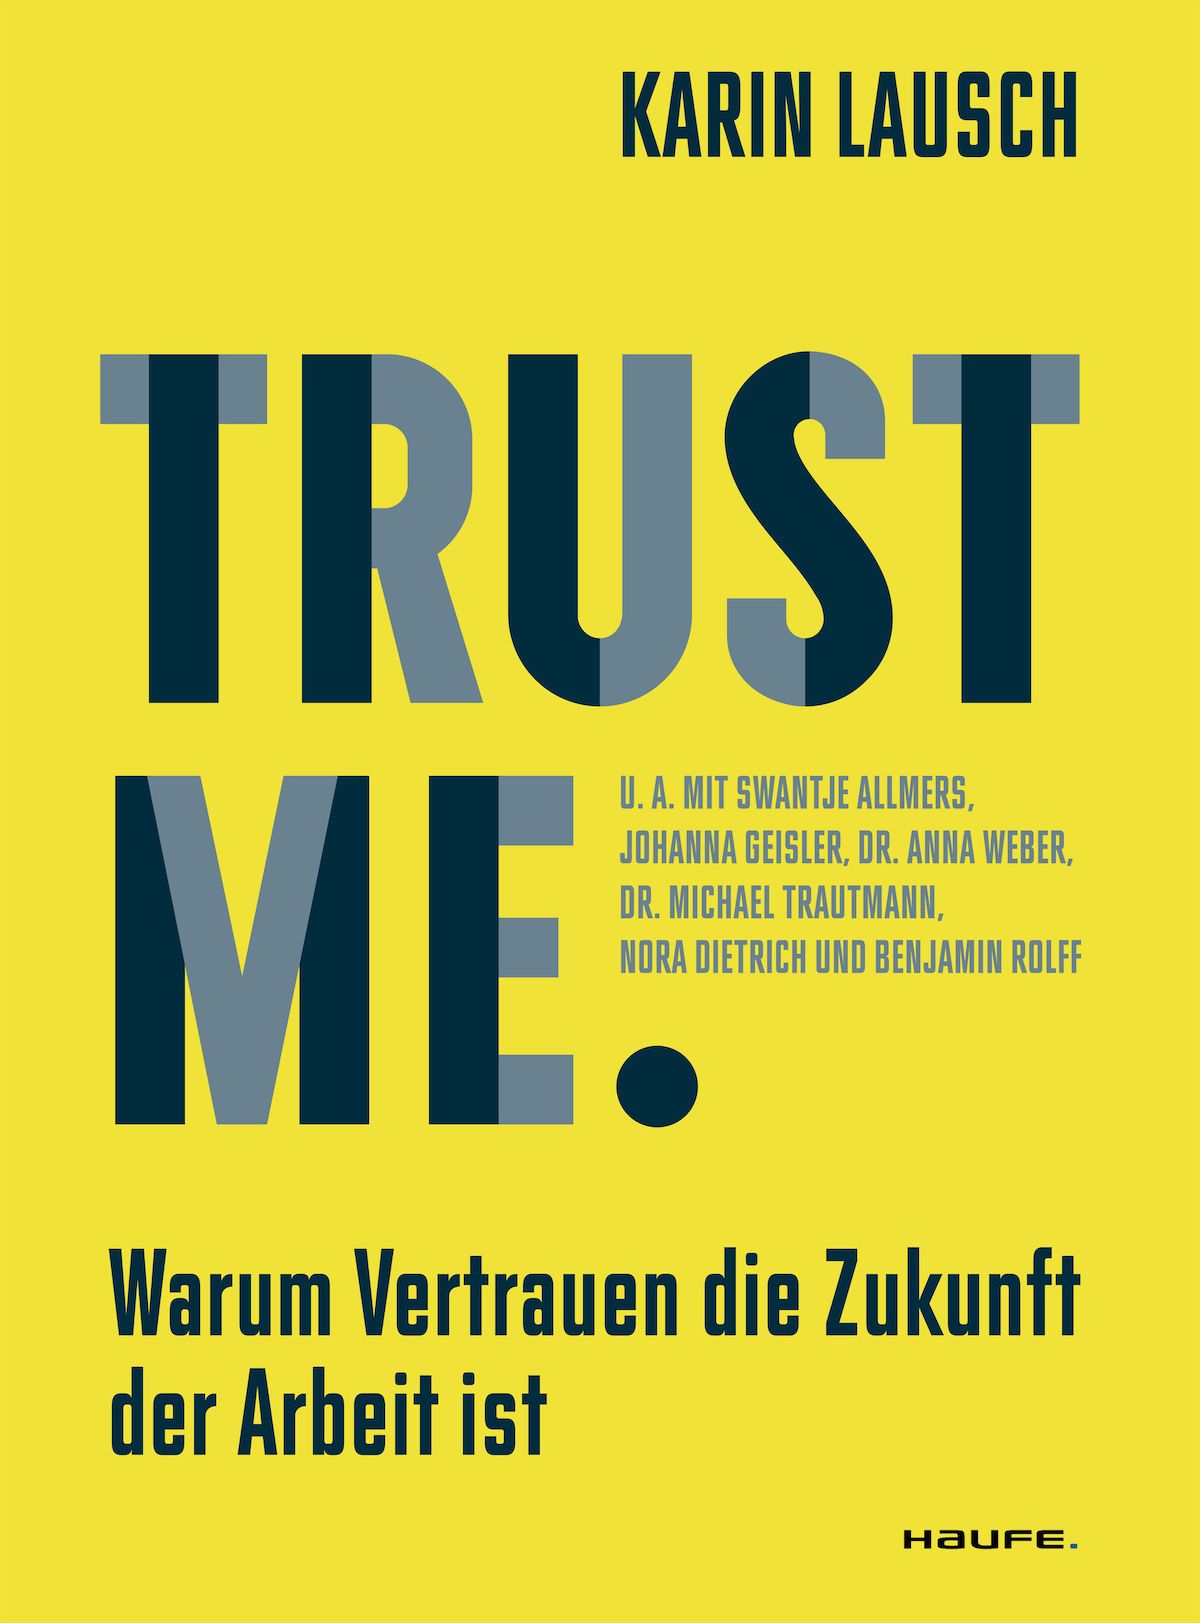 Warum Vertrauen die Zukunft der Arbeit ist. Diese Frage beantwortet Karin Lausch in ihrem Buch Trust me.